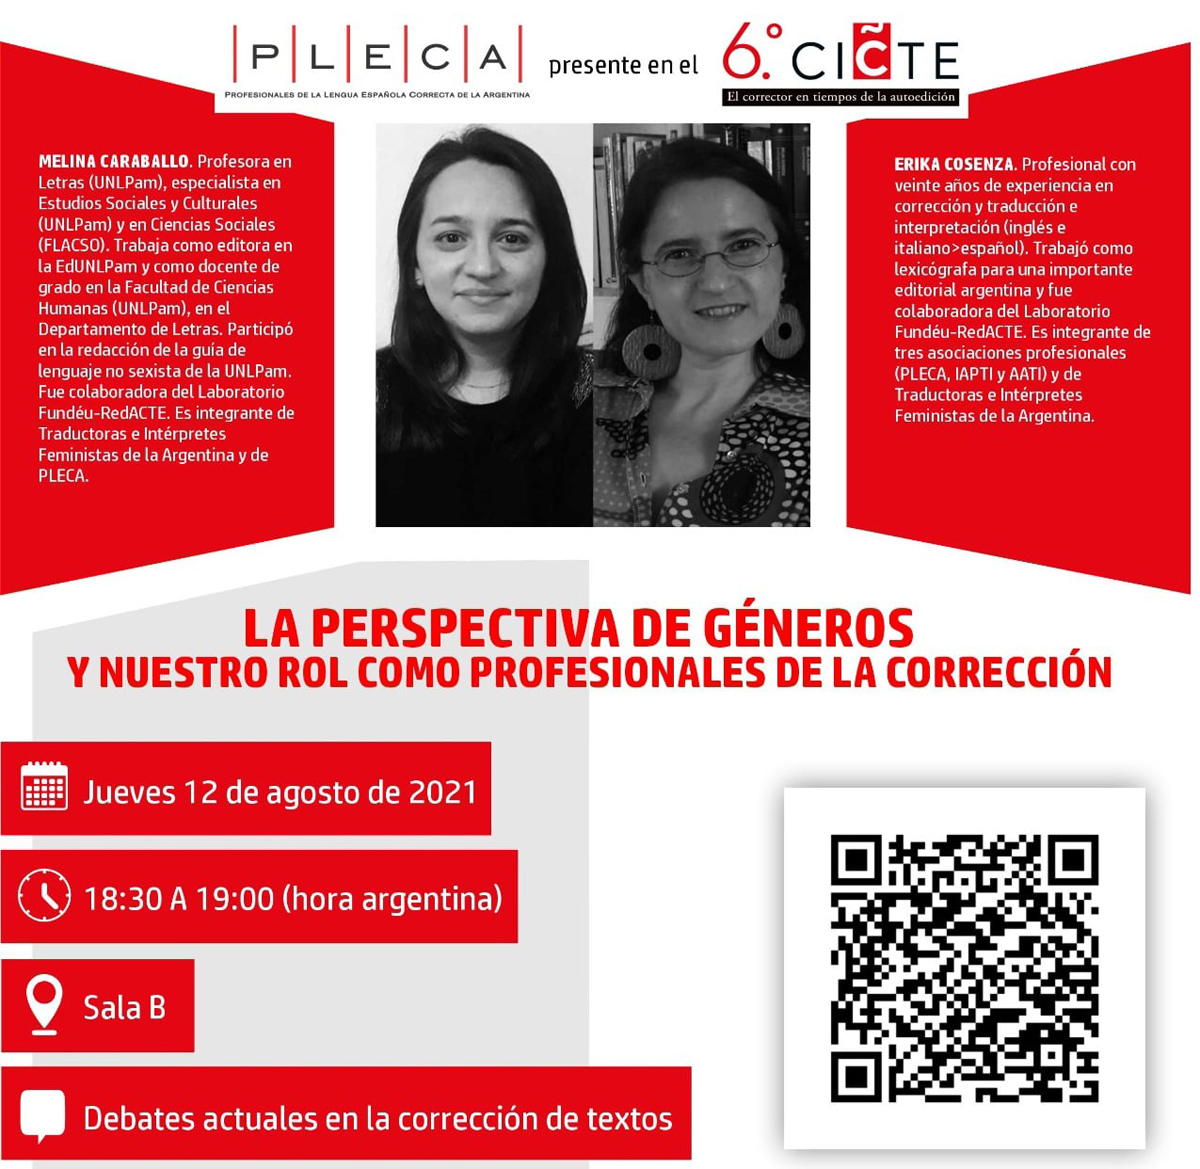 La imagen muestra el flyer de promoción del sexto CICTE, están las fotos de Melina Caraballo y Erika Cosenza, el título de su ponencia «La perspectiva de géneros y nuestro rol como profesionales de la corrección», el logo de PLECA y el congreso.